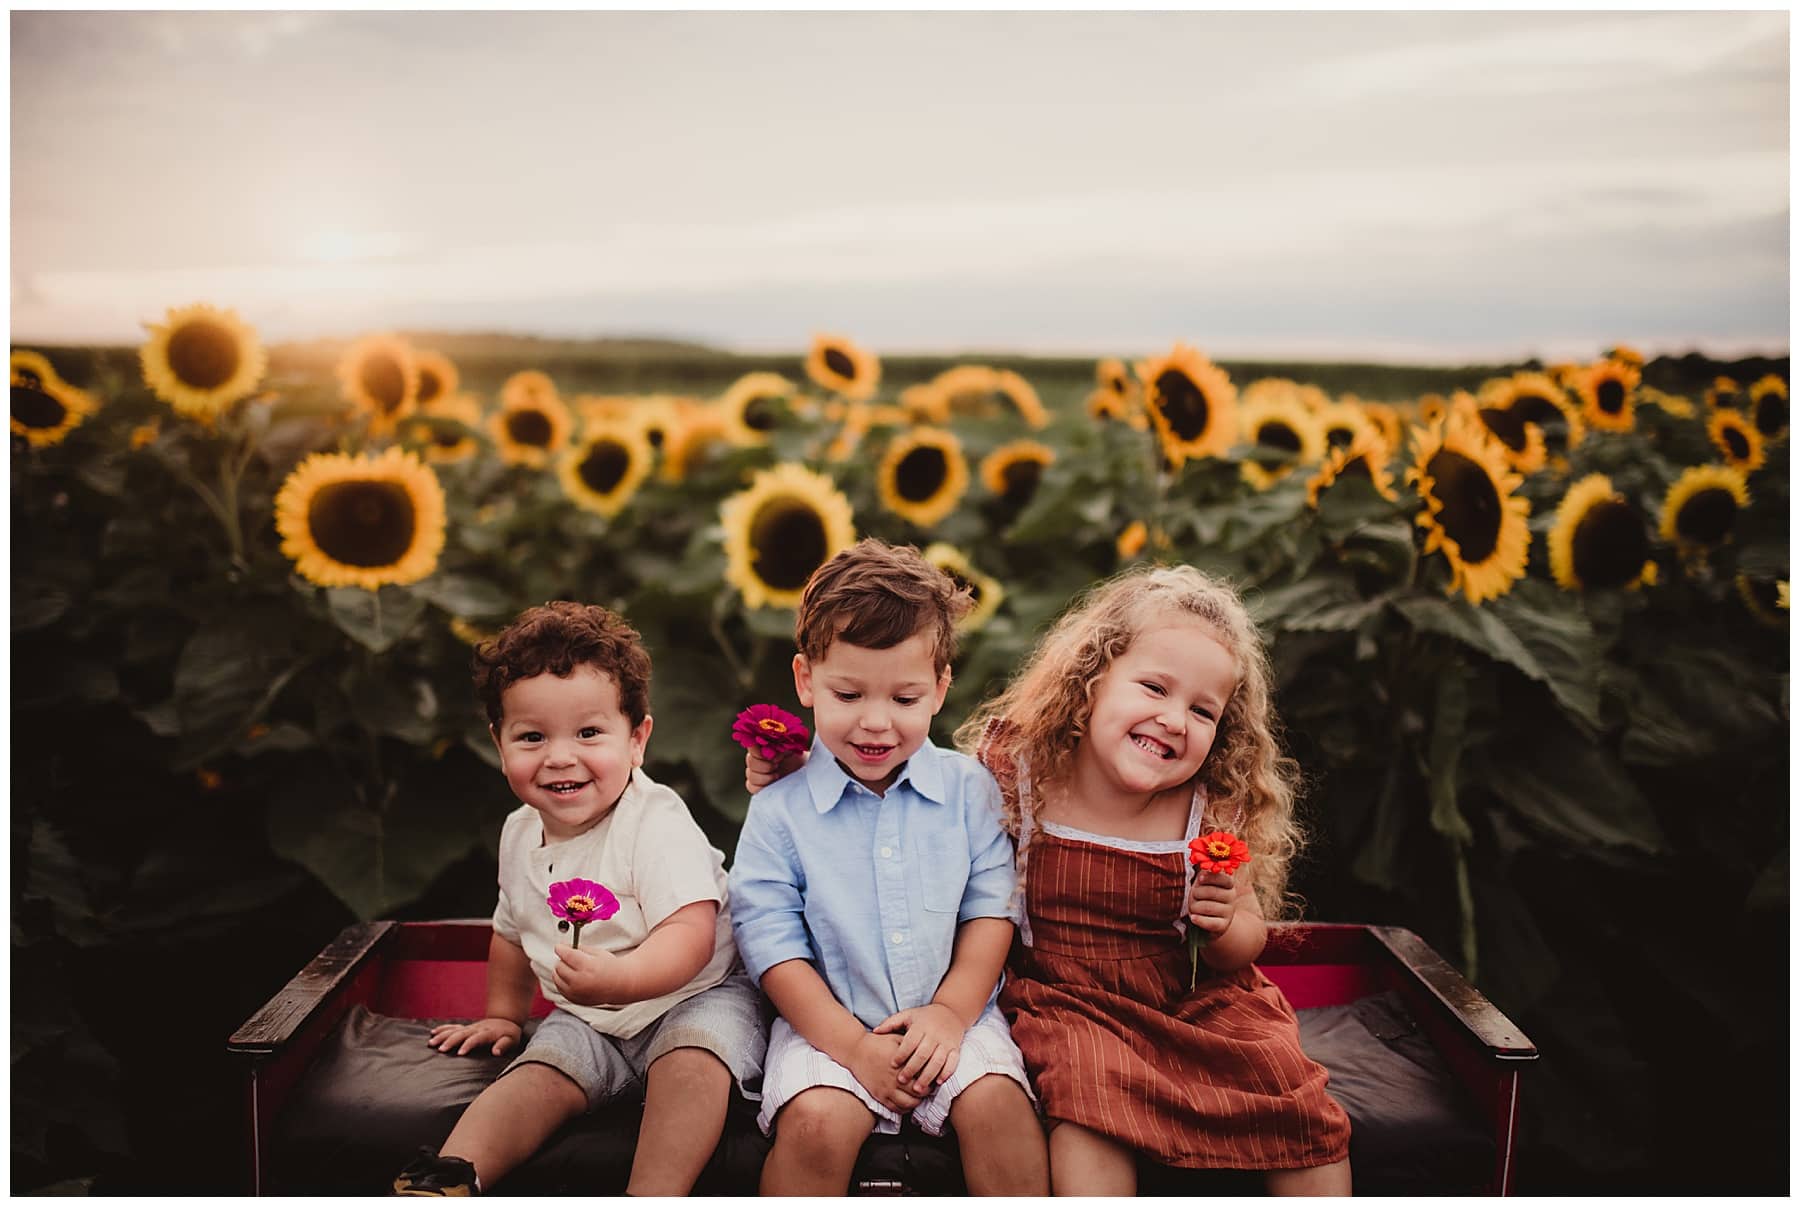 Siblings in Sunflower Field